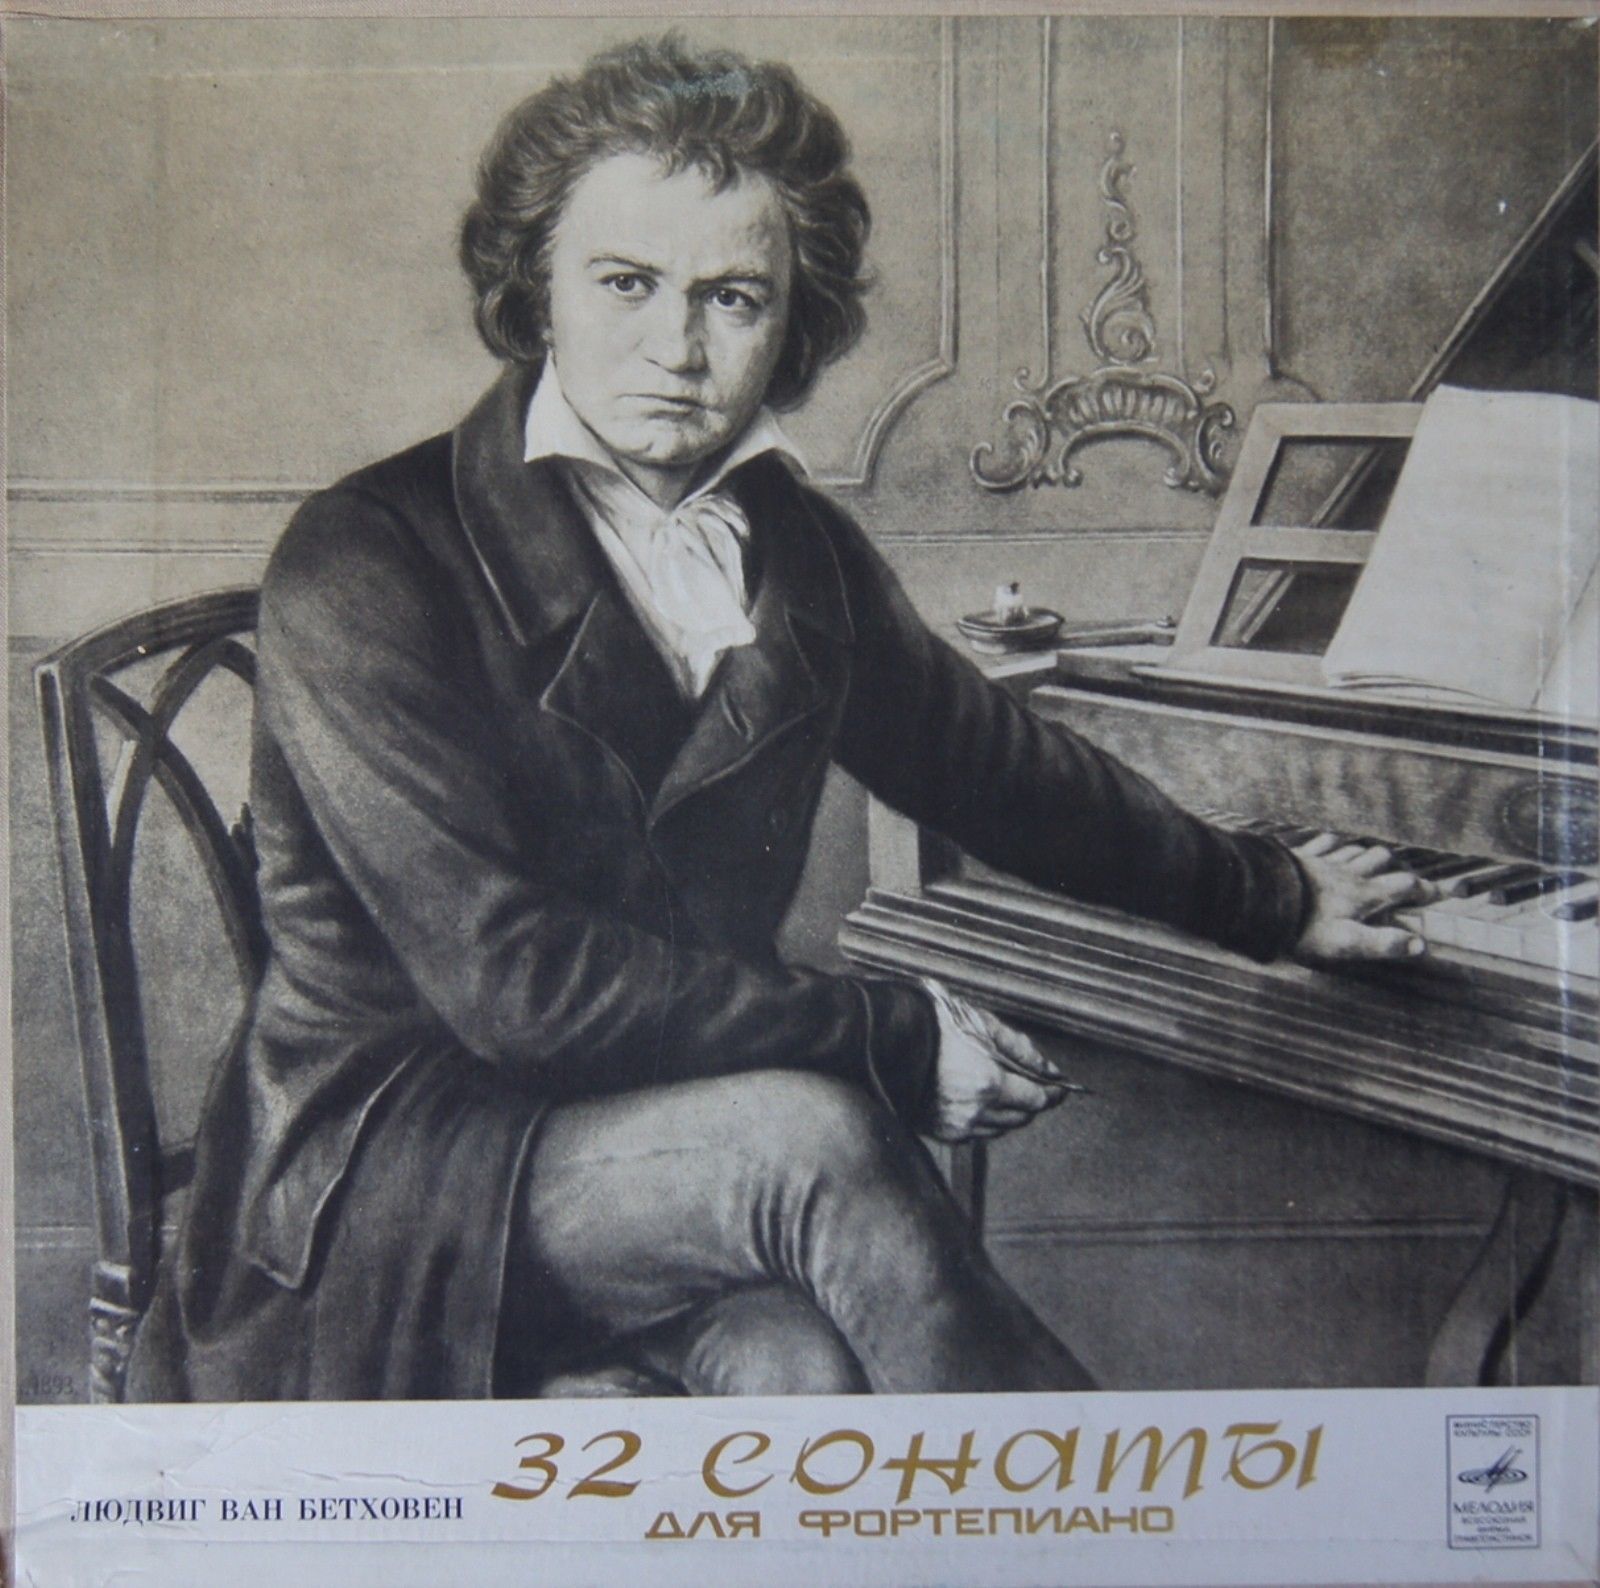 Л. БЕТХОВЕН: 32 сонаты для фортепиано (Мария Гринберг)